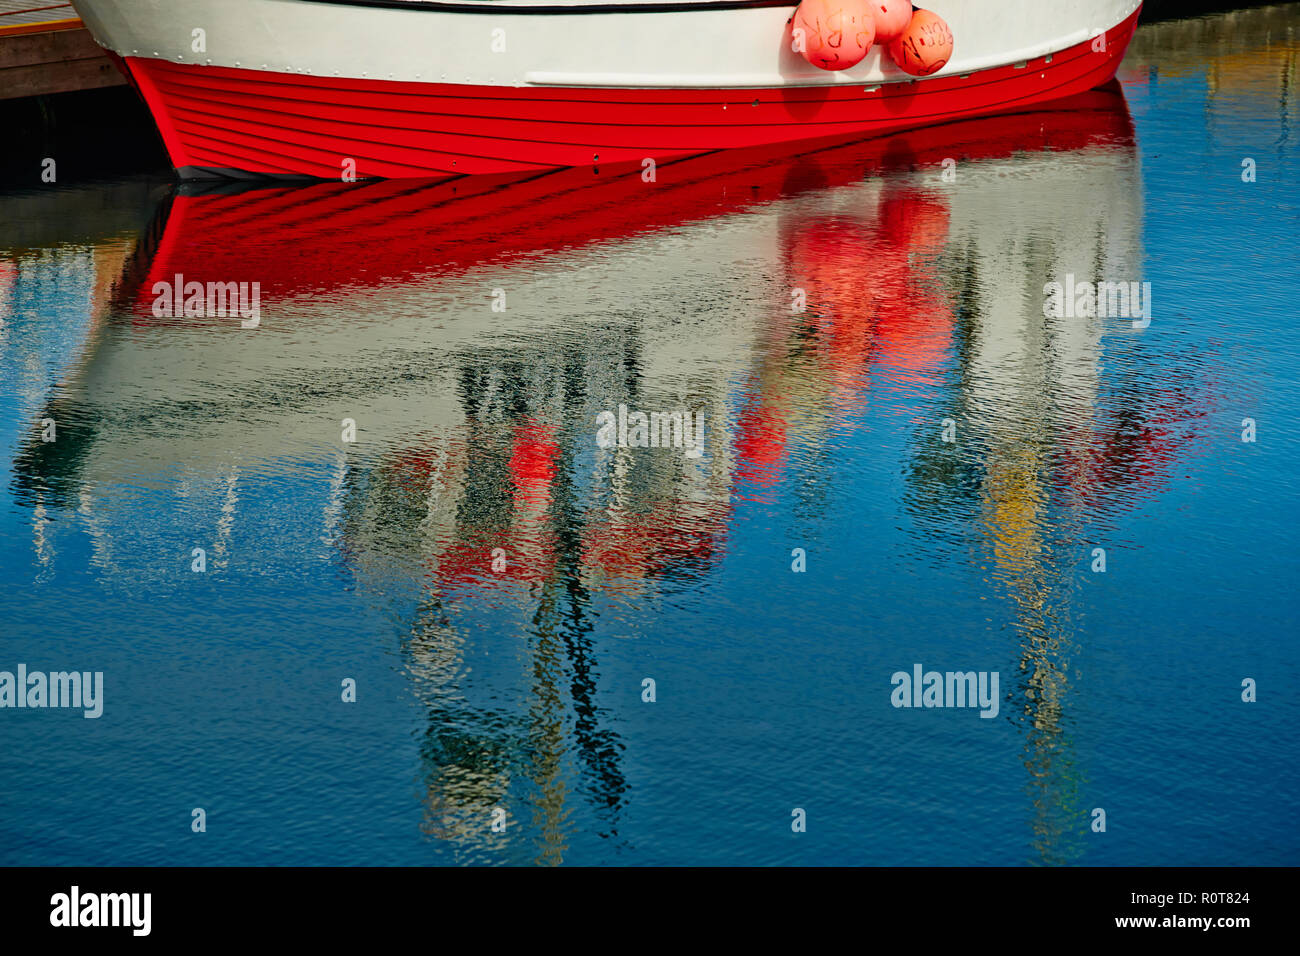 Norwegen, Reflexion von Fischen Boot im Wasser spiegeln, Angeln tackles, blaue und rote Farben Stockfoto